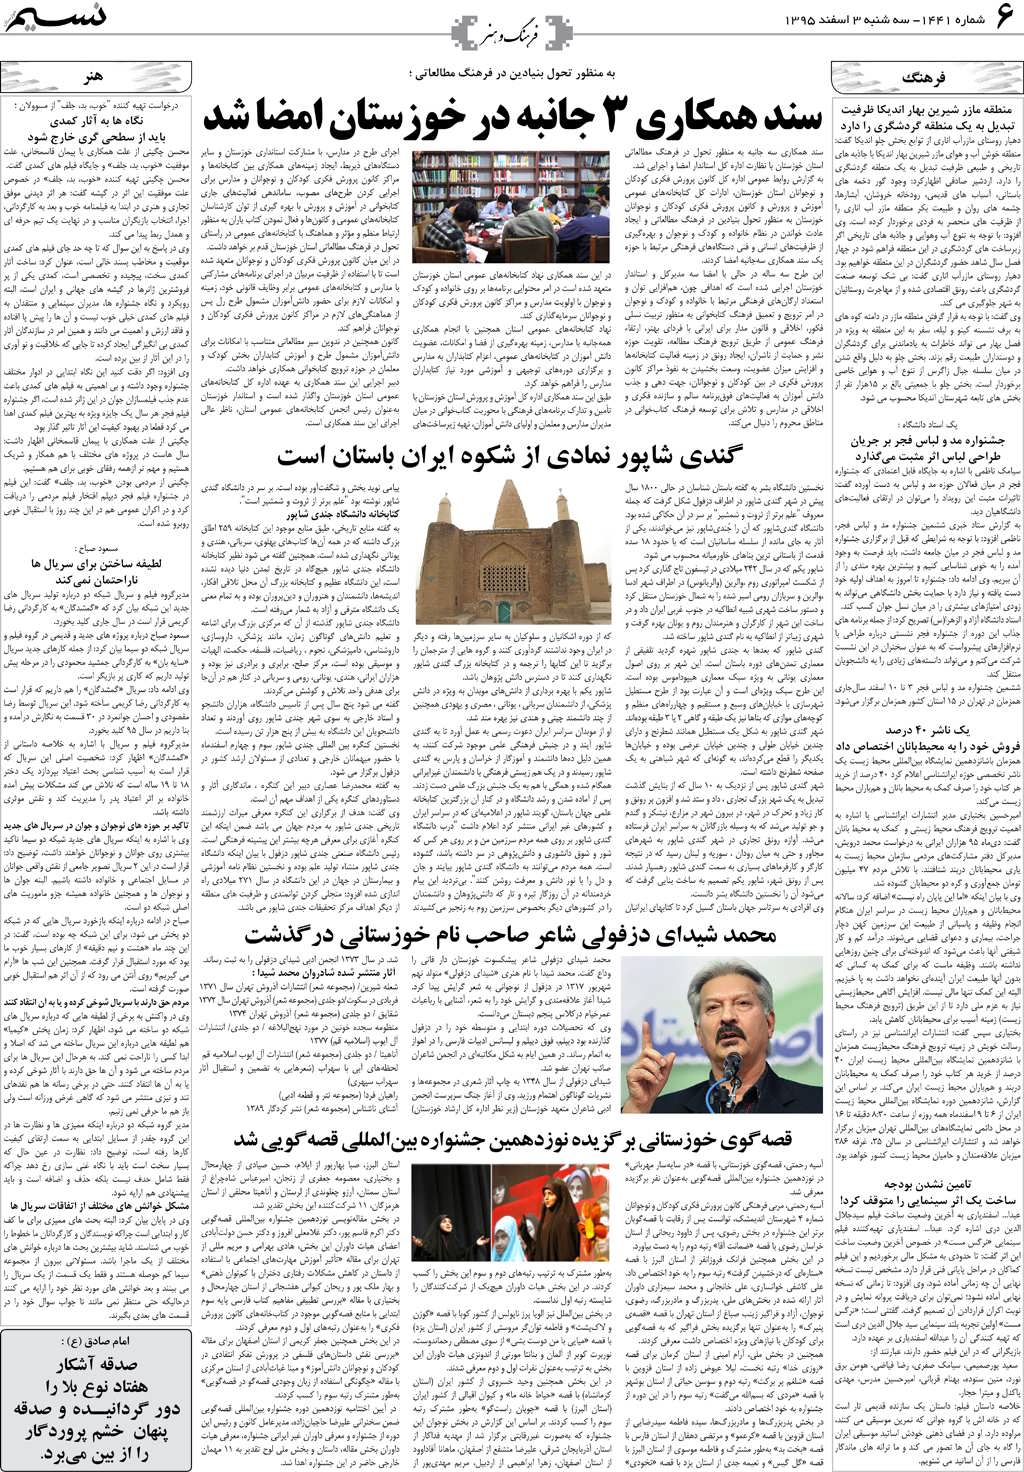 صفحه فرهنگ و هنر روزنامه نسیم شماره 1441